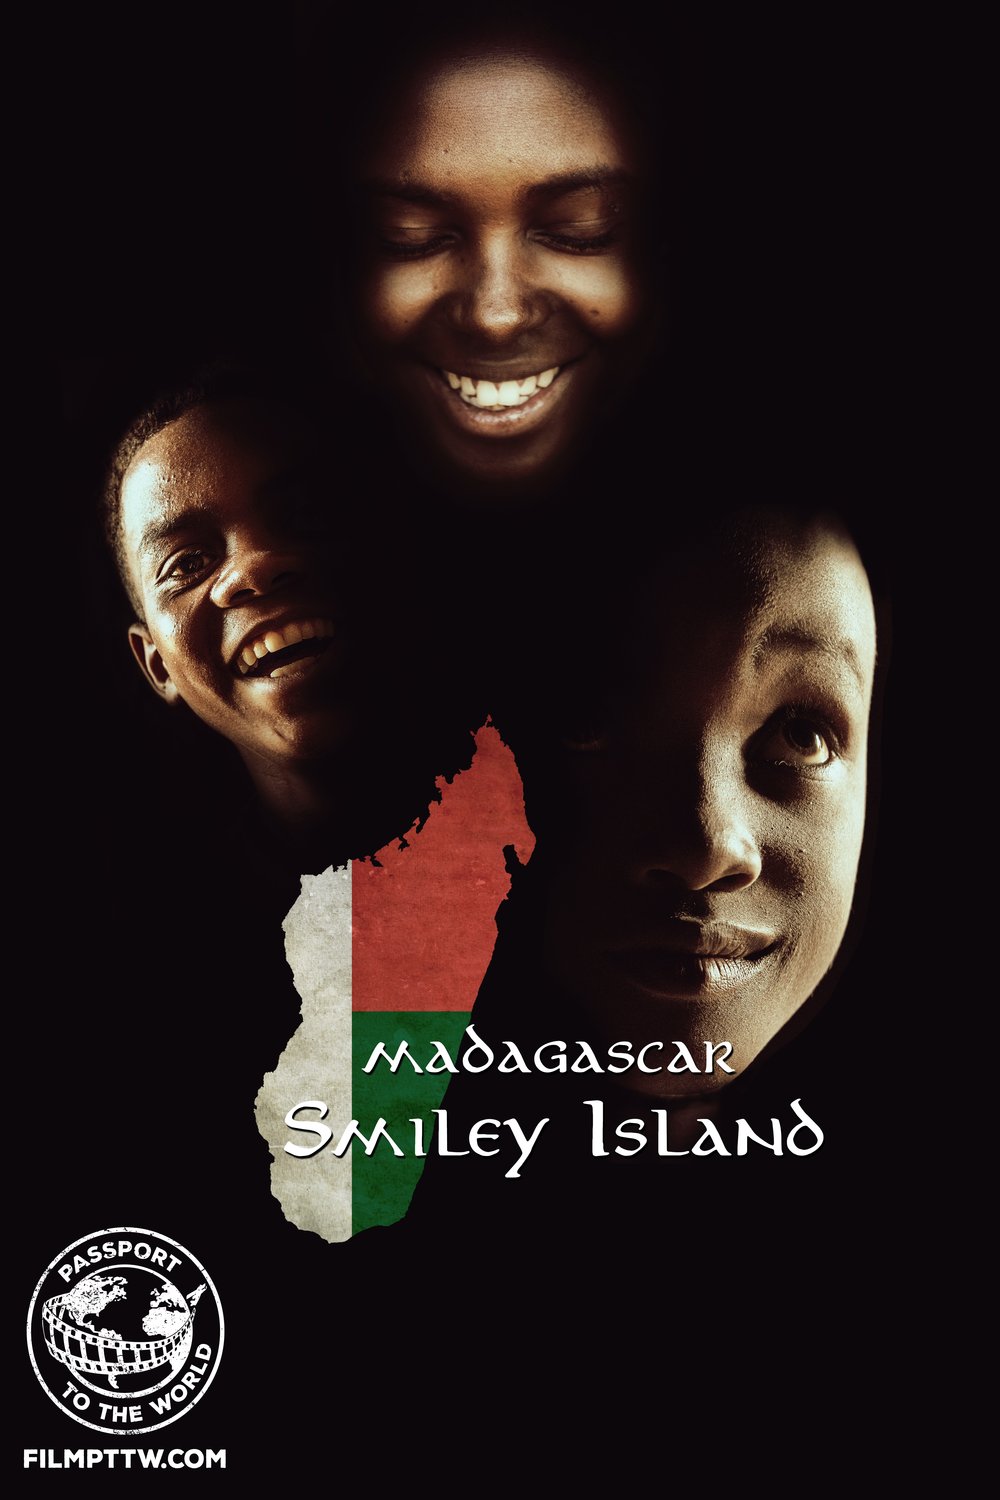 L'affiche du film Passport to the World: Madagascar: Smiley Island